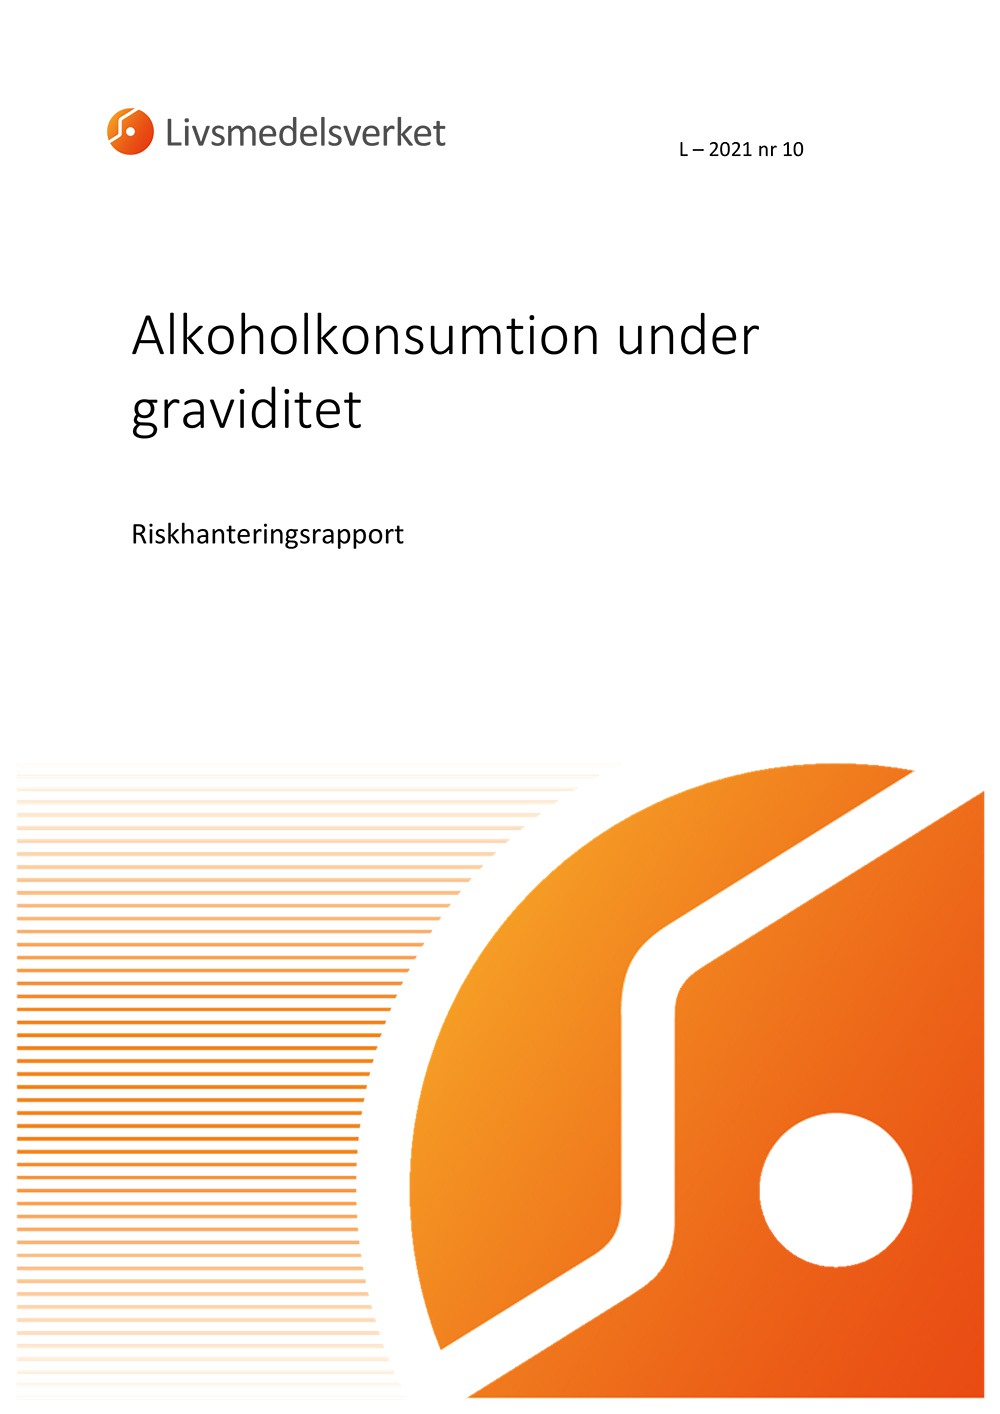 Framsidan av rapport L 2021 nr 10 - Alkoholkonsumtion under graviditet, Riskhantering.